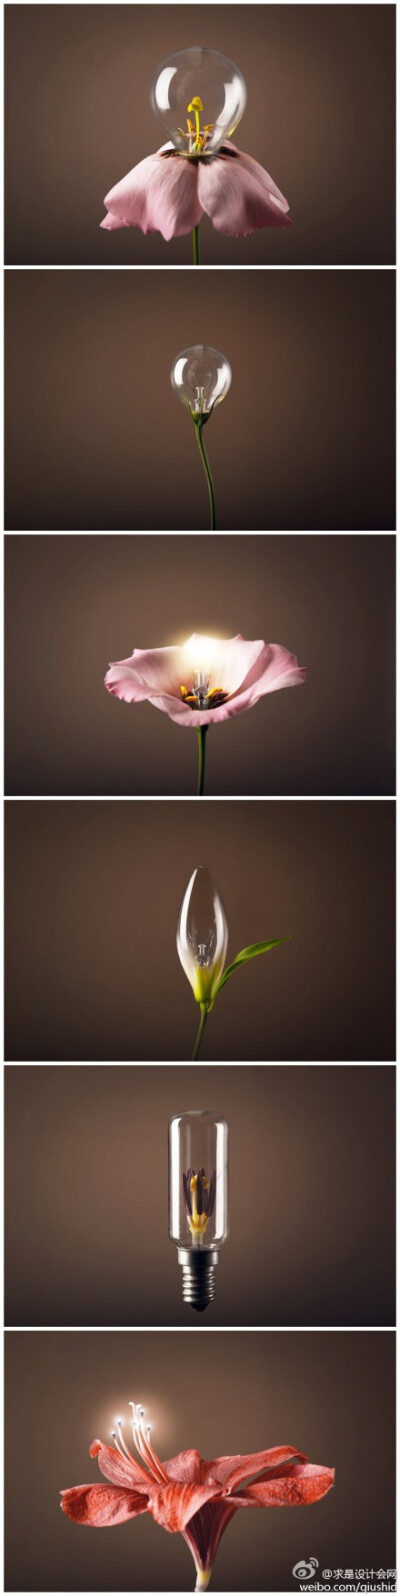 花开有光，那是你的经过，来自Blackecho92的创意摄影作品